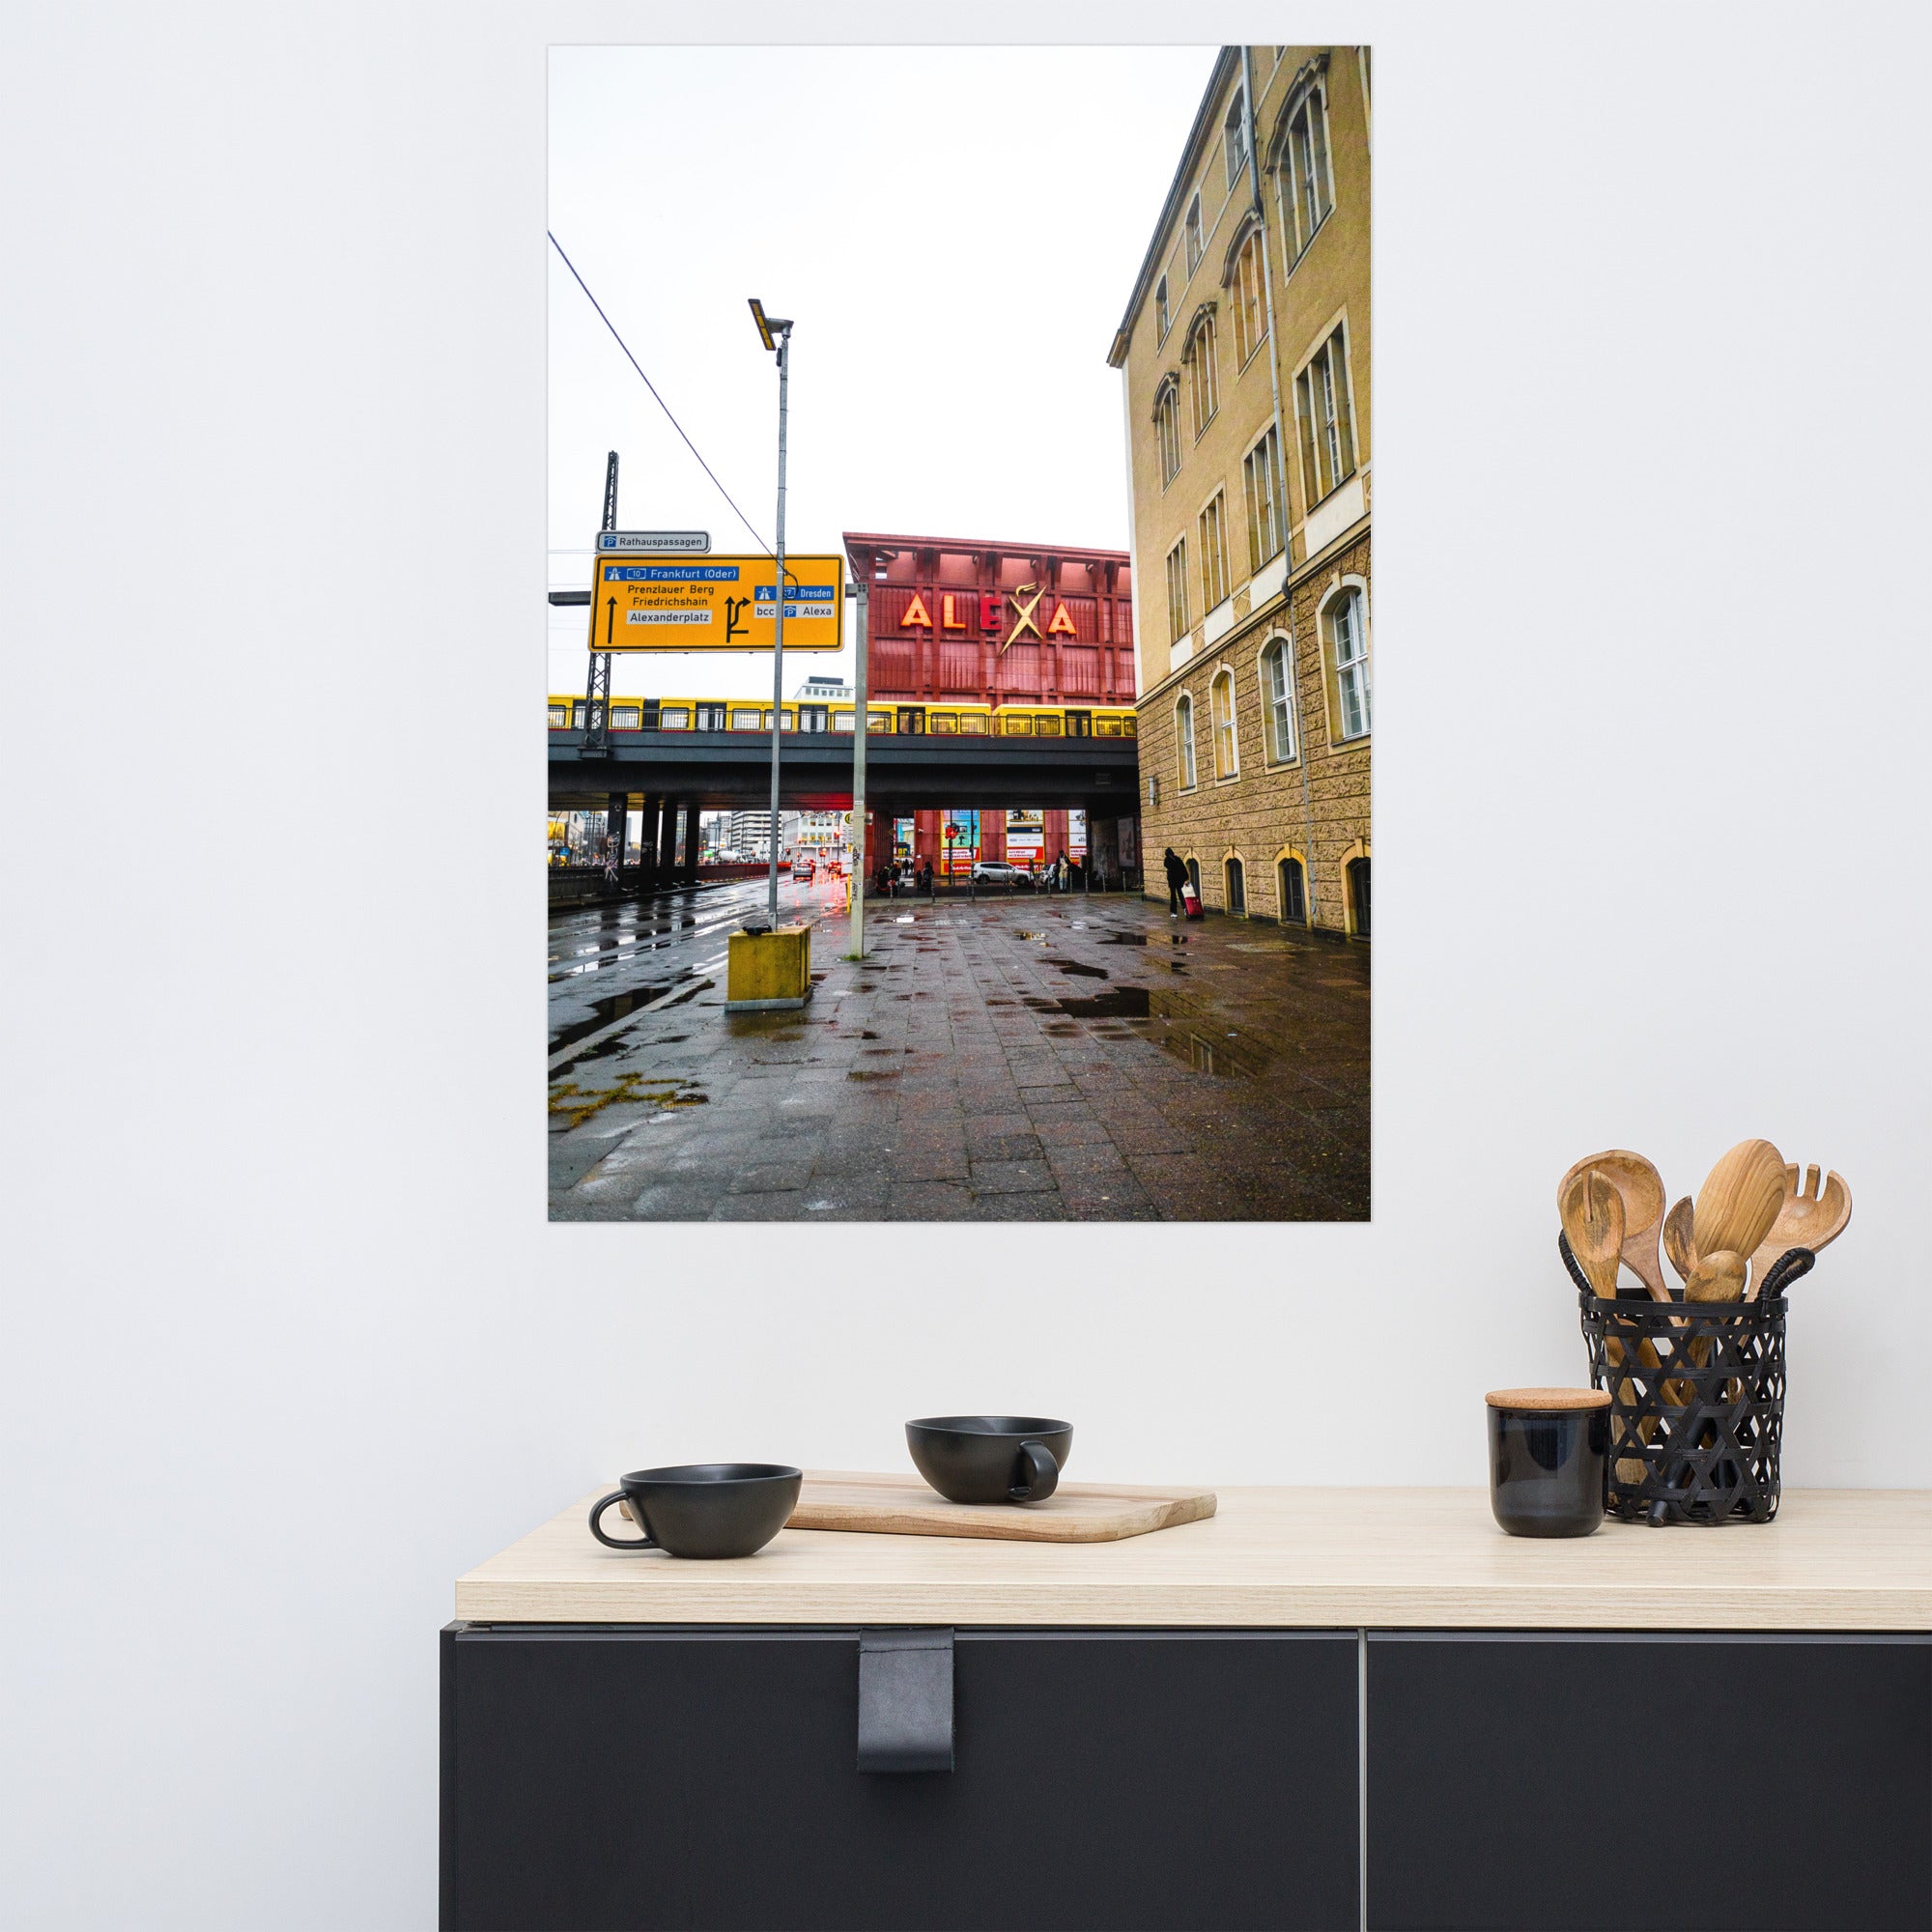 Photographie de rue avec l'enseigne du centre commercial ALEXA en arrière-plan à Berlin